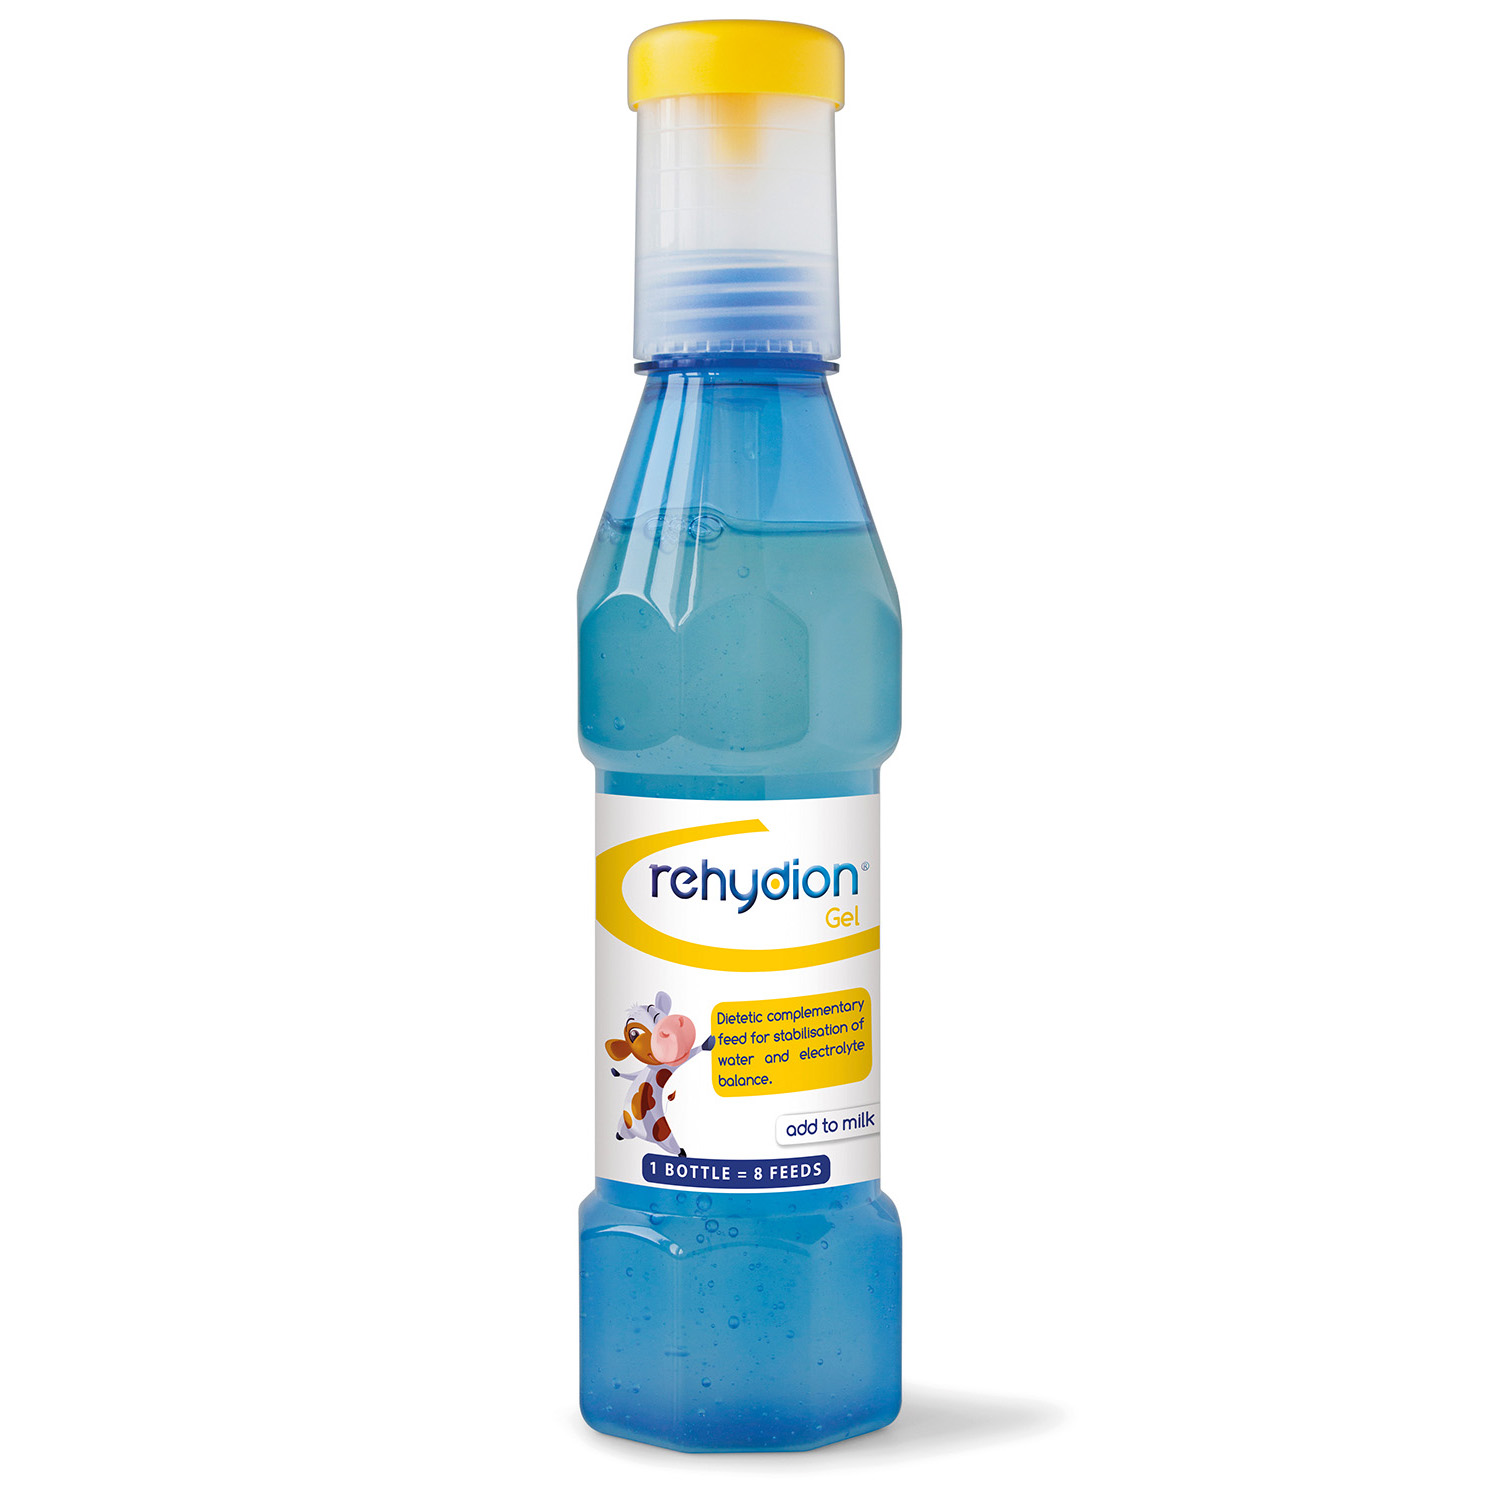 REHYDION GEL 1 bottle (8 Feeds)